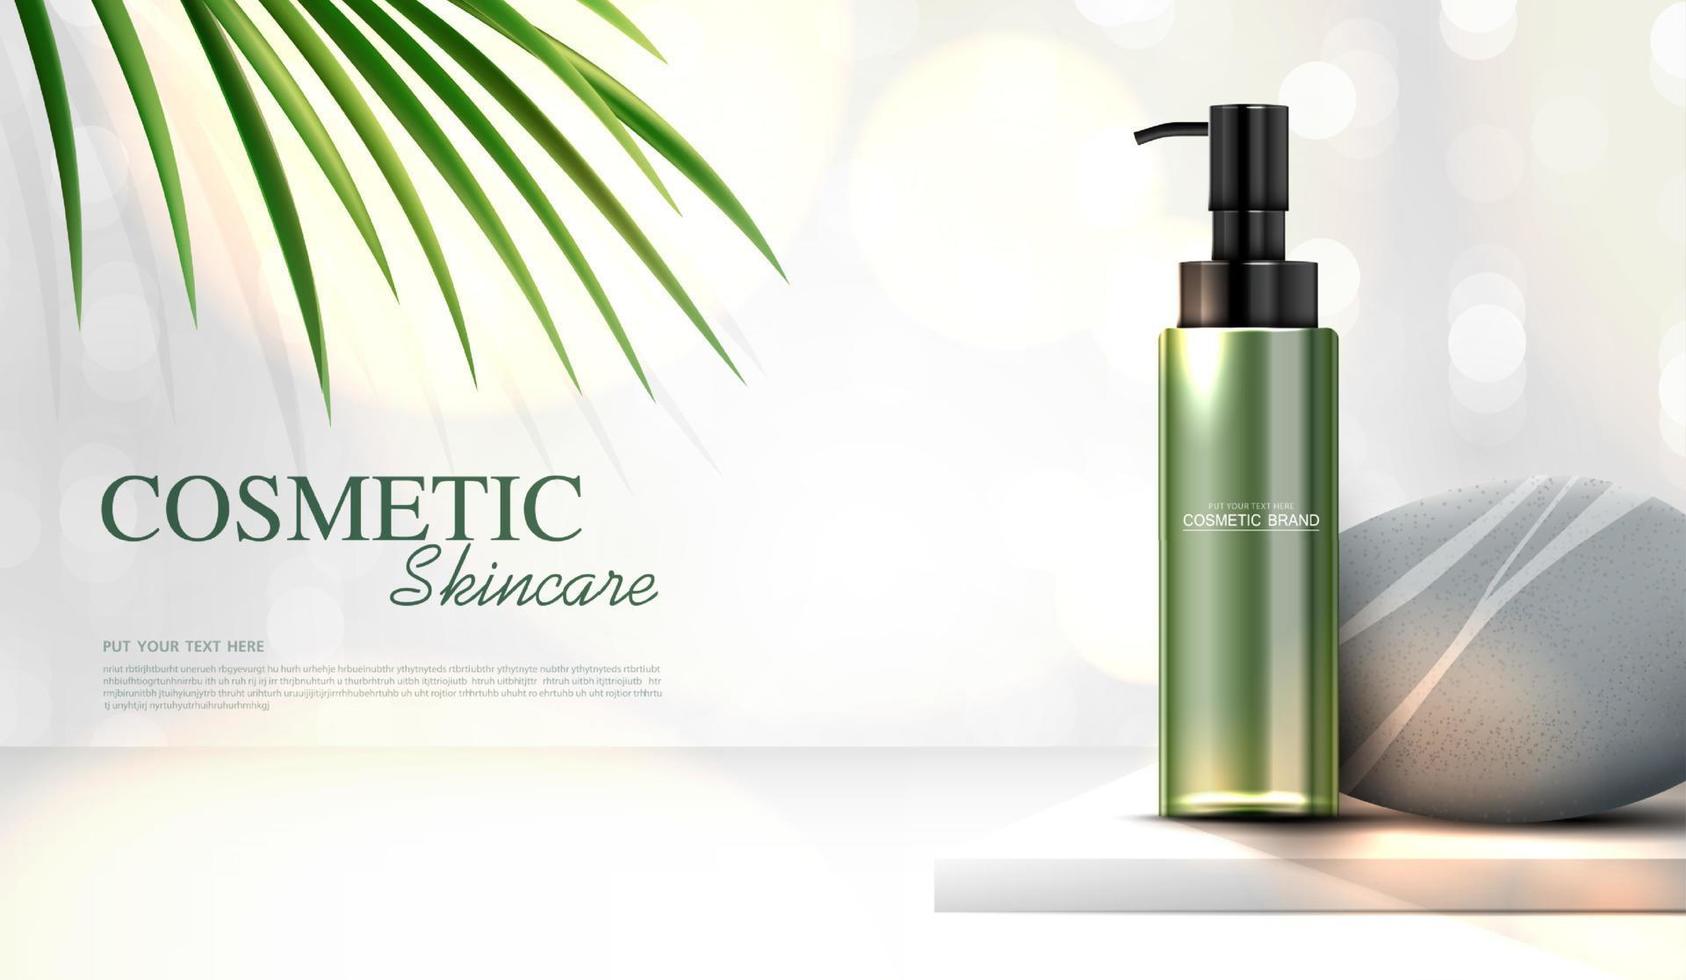 uppfriskande grönt te kosmetika eller hudvårdsprodukter annonser med flaska, bannerannons för skönhetsprodukter, sten och blad på bakgrunden glittrande ljuseffekt. vektor design